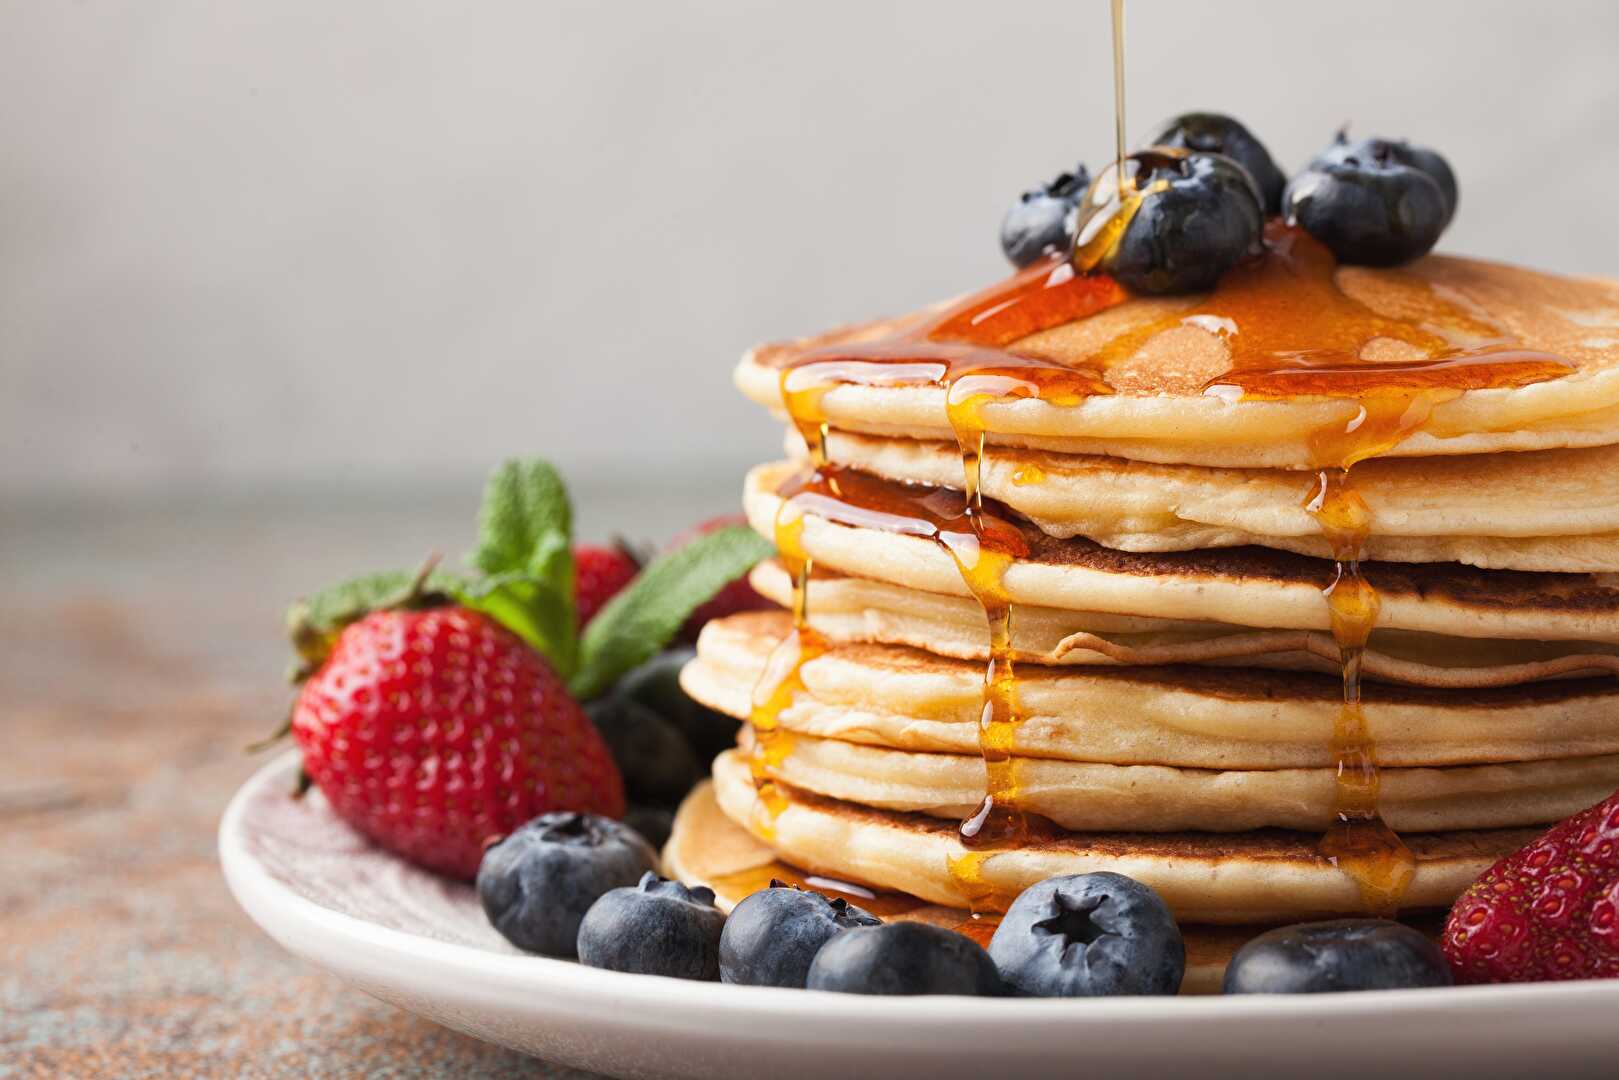 Pancakes : Accompagnez vos pancakes comme il se doit grâce à ces idées gourmandes